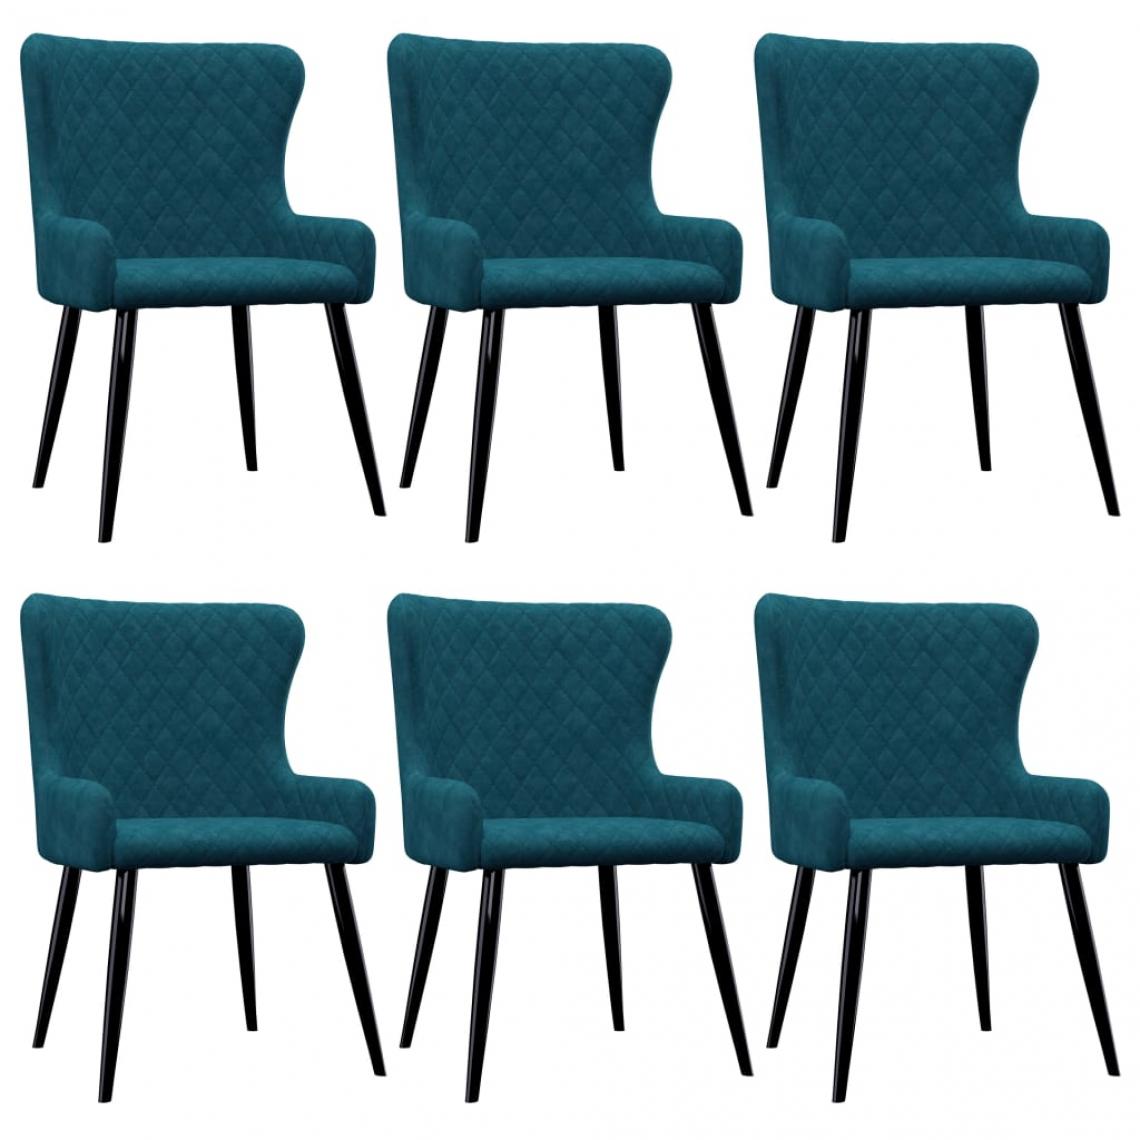 Decoshop26 - Lot de 6 chaises de salle à manger cuisine style moderne et chic en velours bleu pieds en métal CDS022229 - Chaises